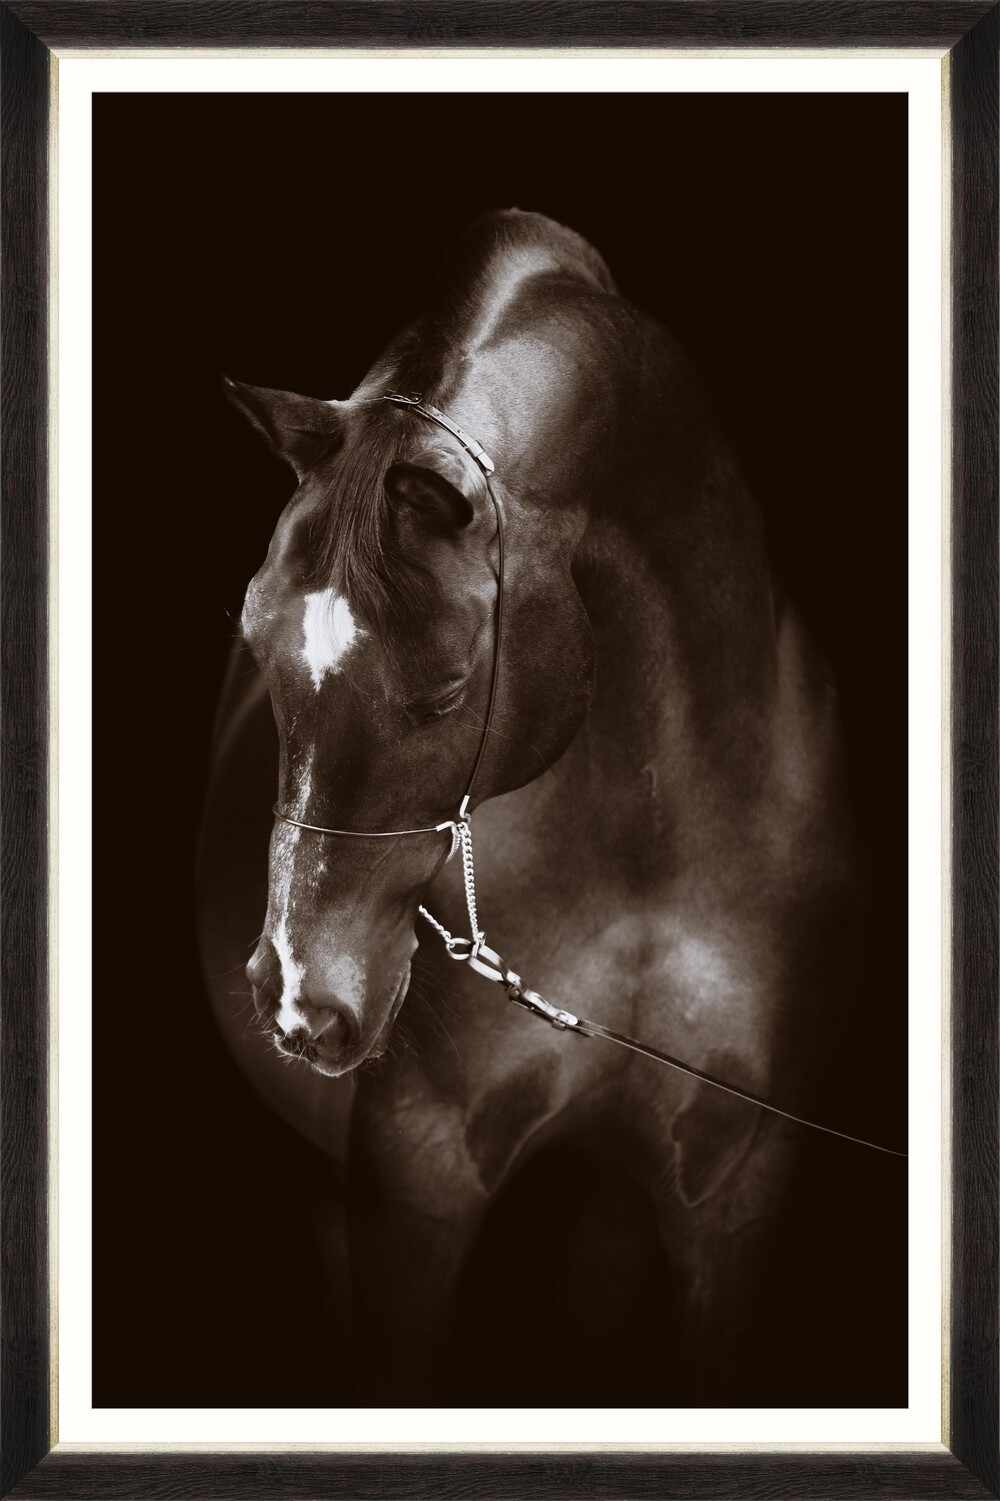  Tablou Framed Art Horse Resting la pret 596 lei 